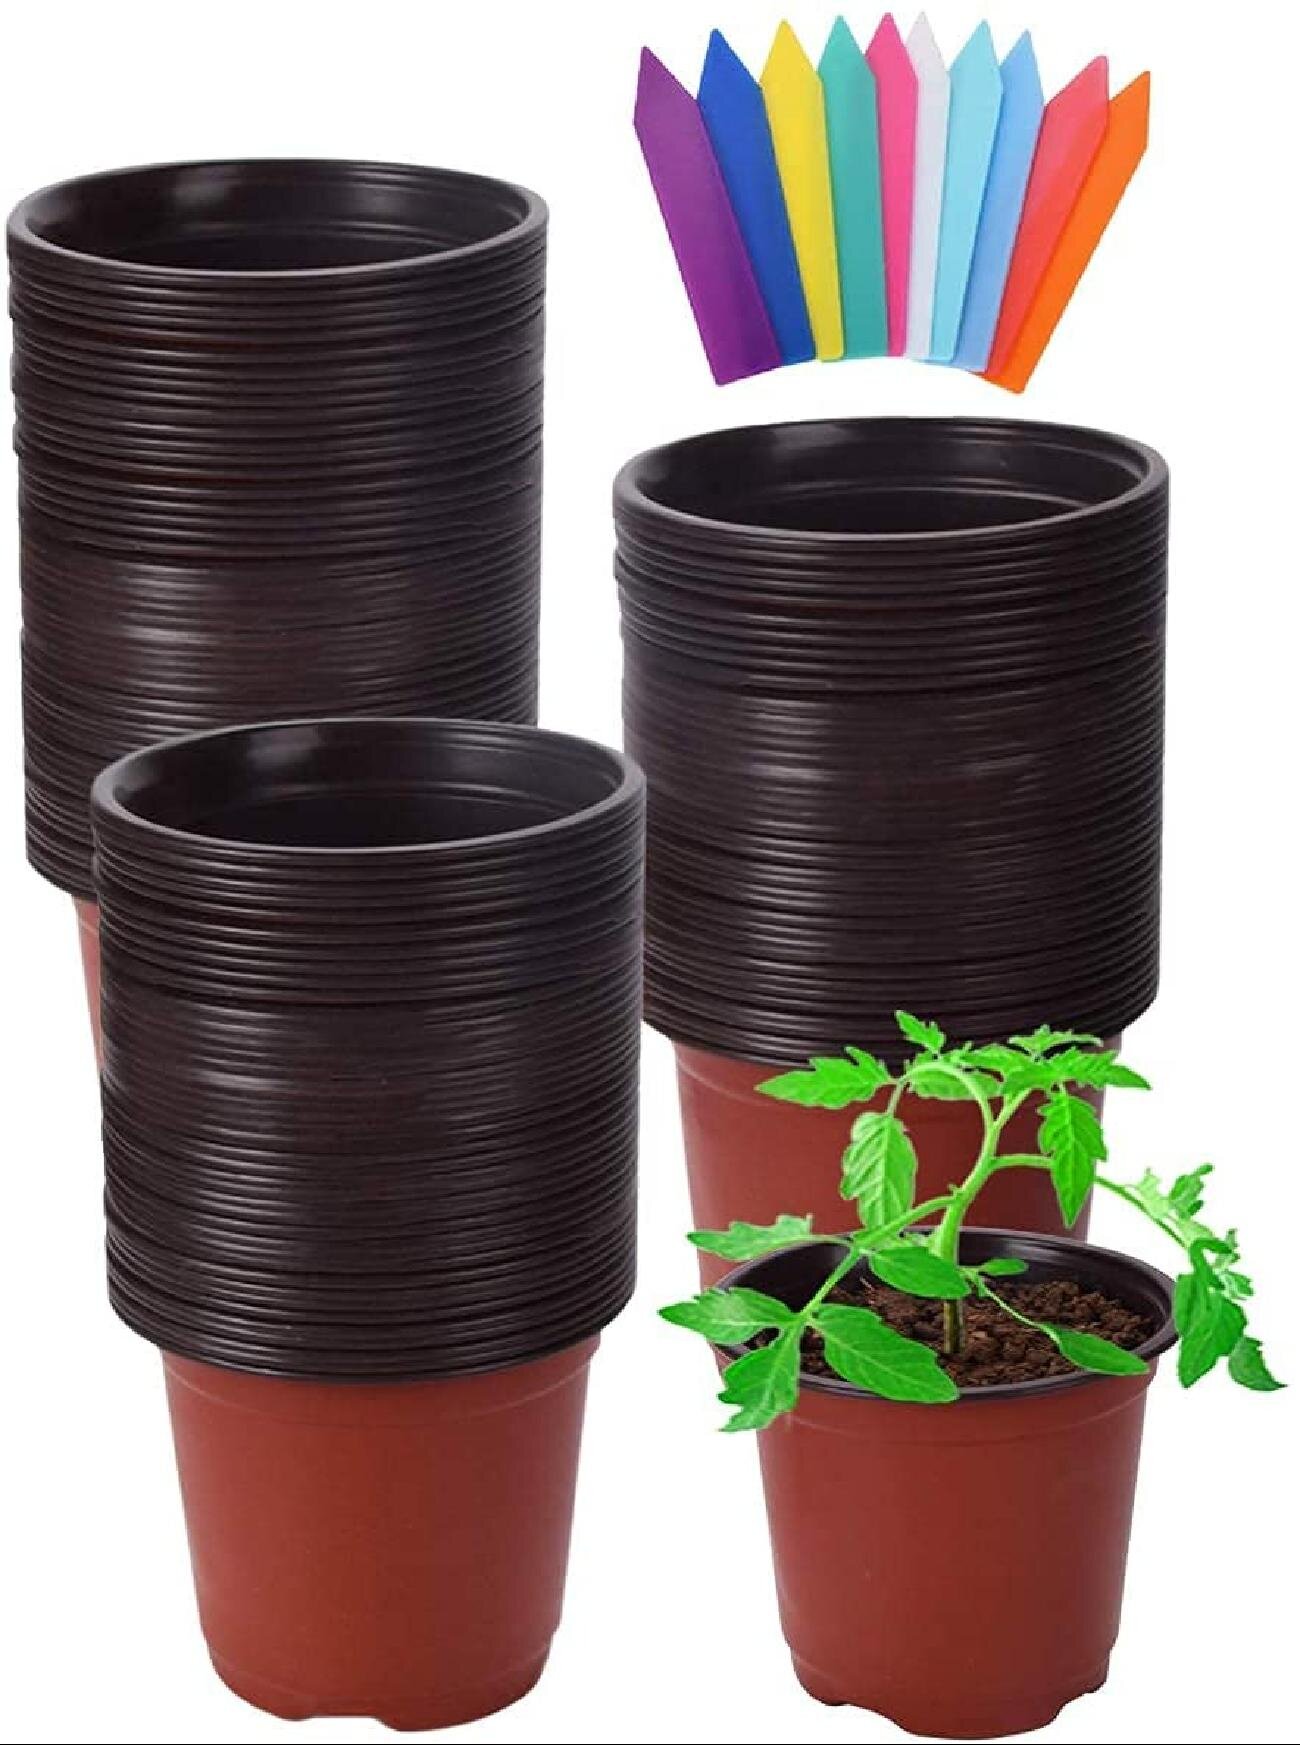 100 Pcs Plastic Nursery Pot Seedlings Flower Planter Container For Garden Plant 